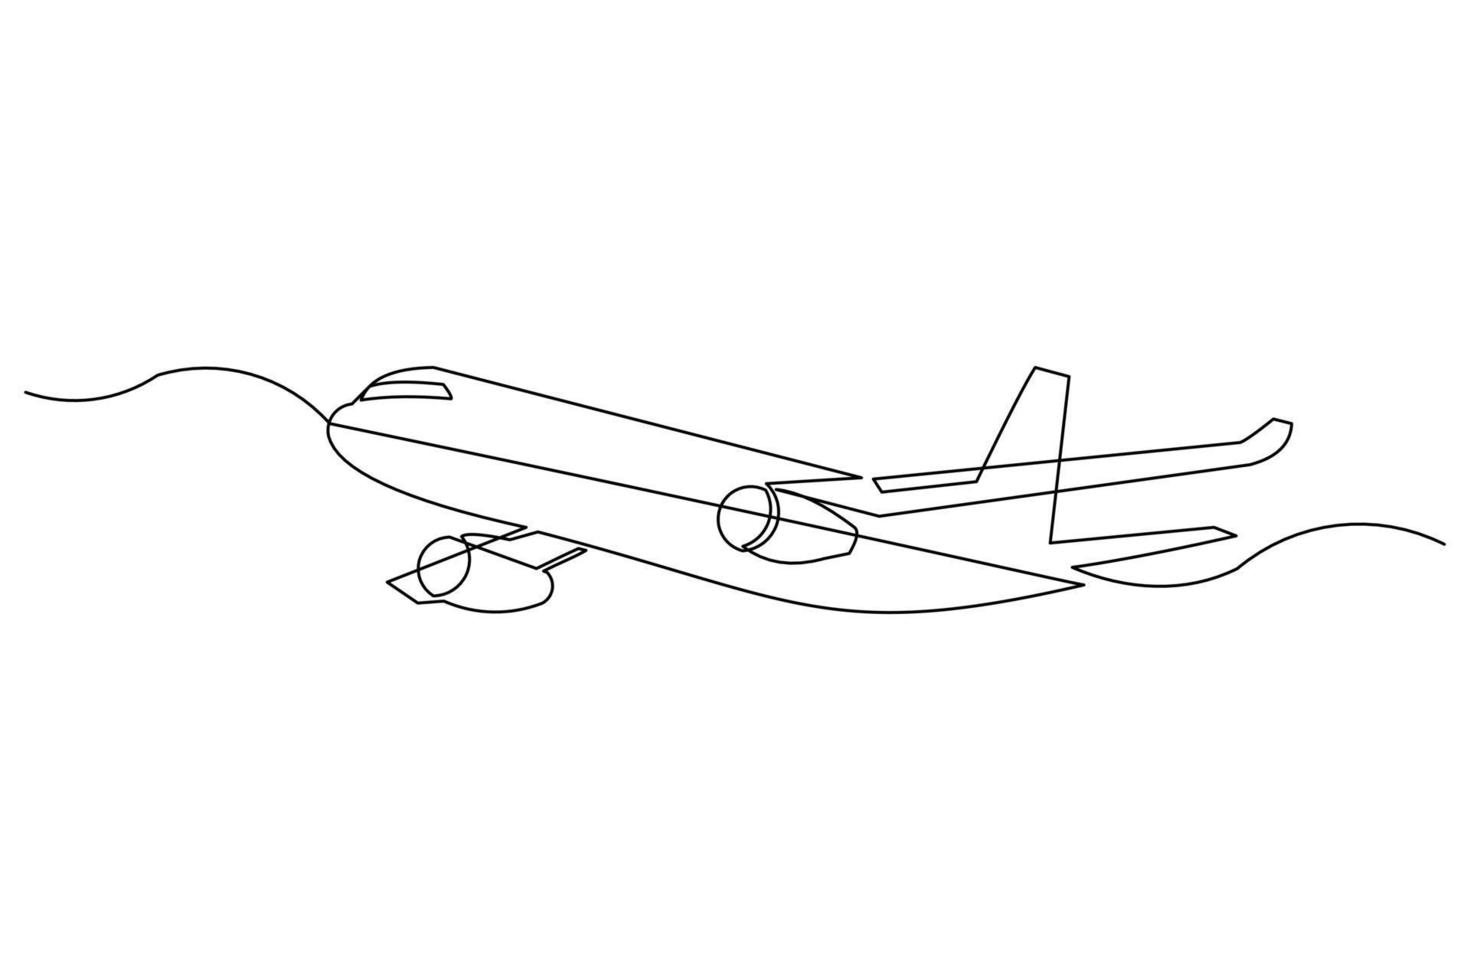 dessin en ligne continu d'un avion volant. dessin au trait unique de télécommande de modélisation aérodynamique d'avion à réaction. illustration vectorielle vecteur